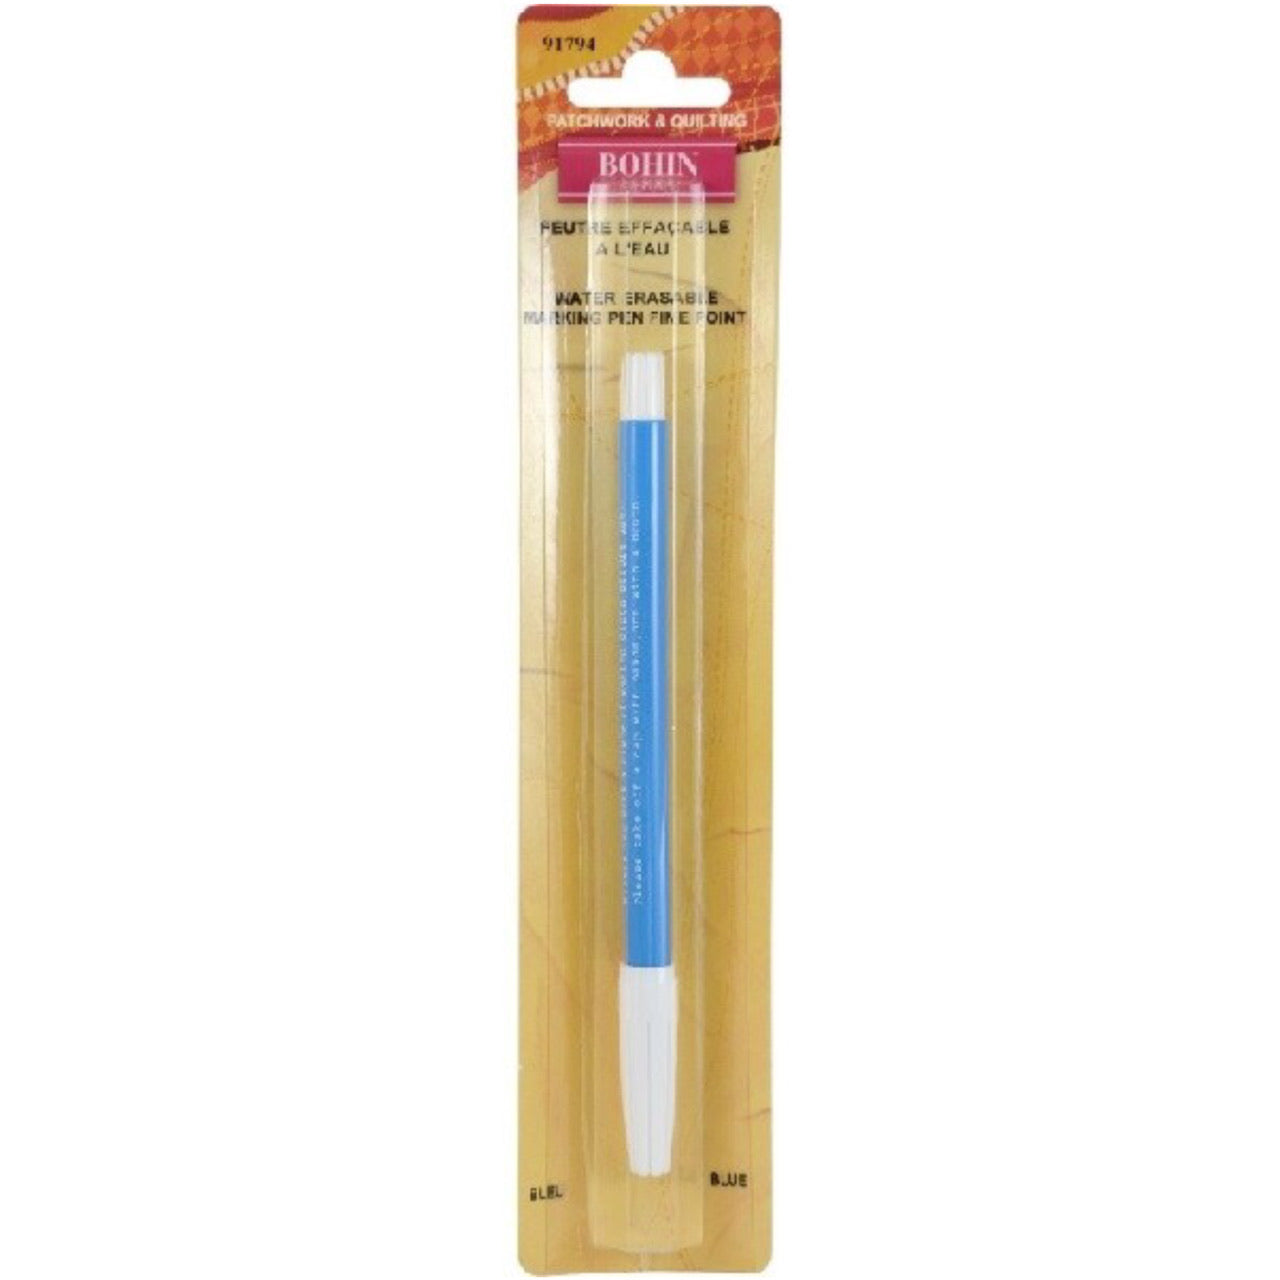 Water Erasable Marking Pen - Fine - Blue